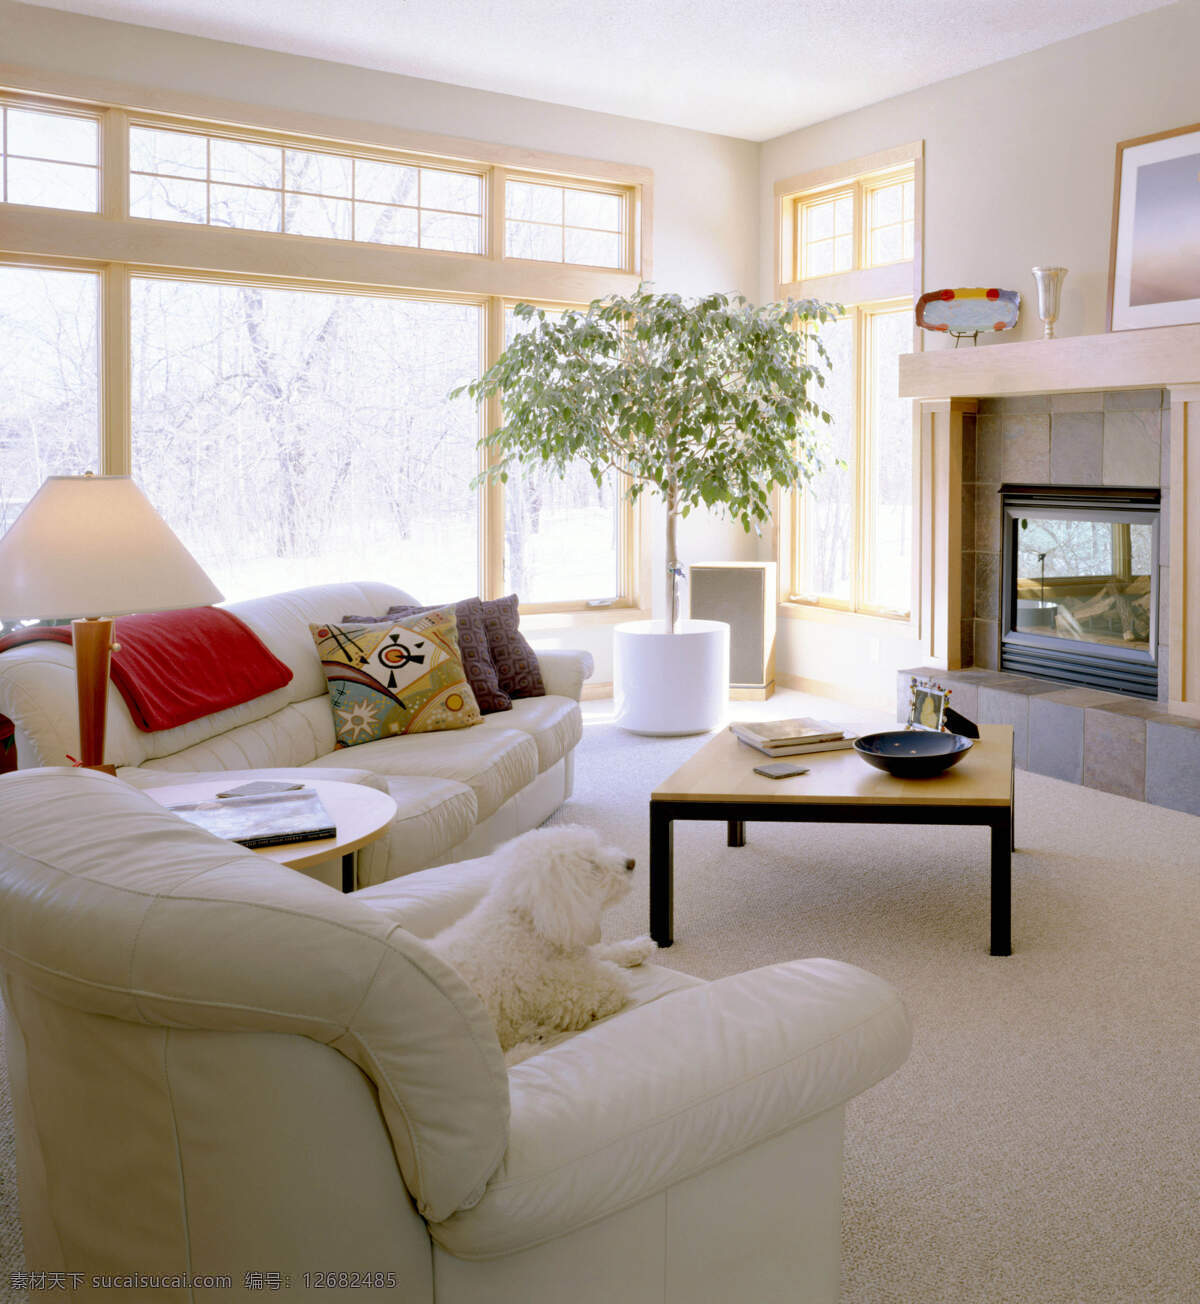 白色 干净 室内设计 室内装修 装修 地毯室内设计 白色客厅 家居装饰素材